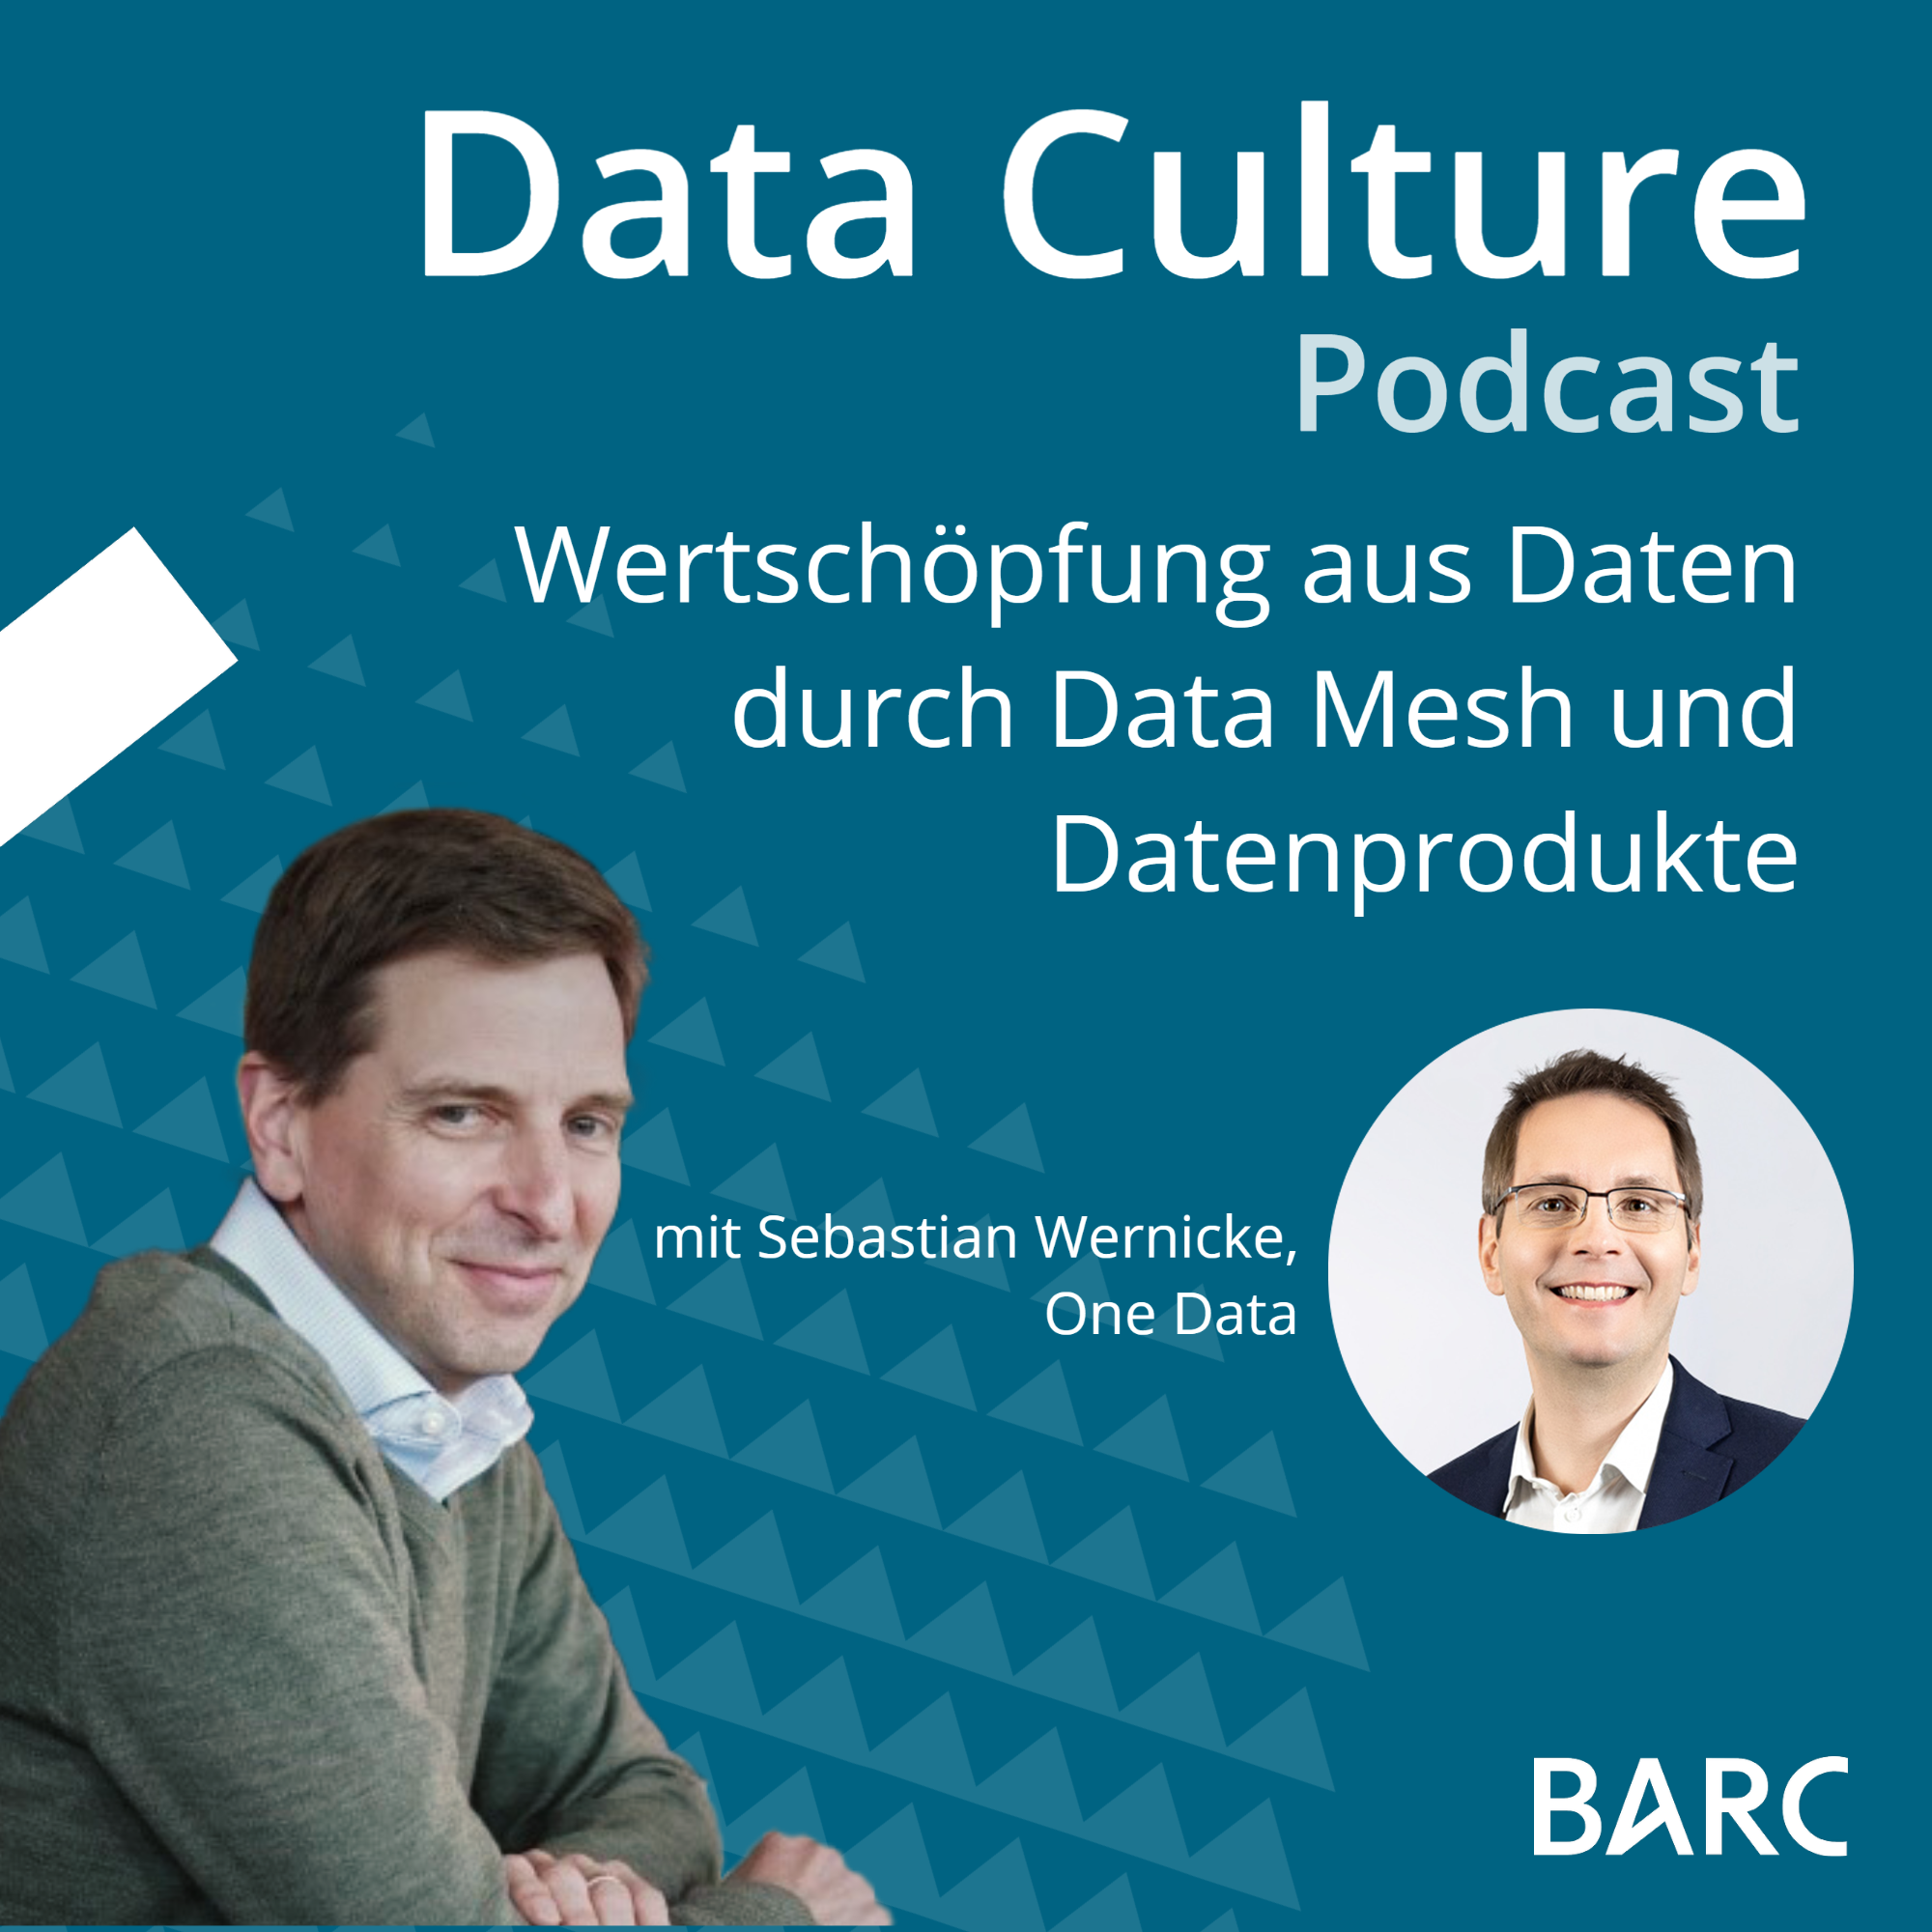 Wertschöpfung aus Daten durch Data Mesh und Datenprodukte – mit Sebastian Wernicke, One Data